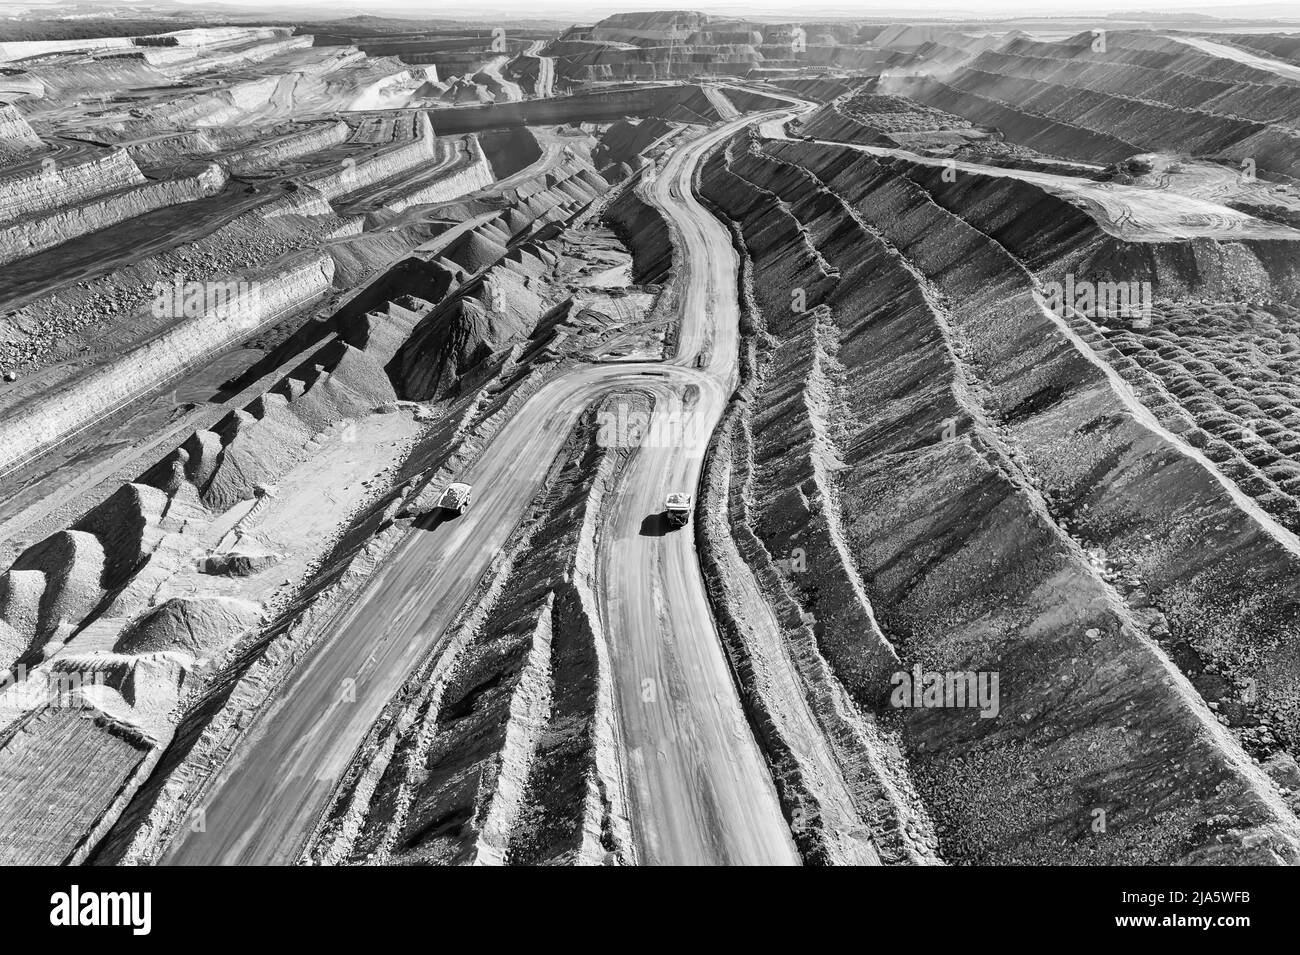 Terrain extrême dépoussiéré de la mine de charbon de fer à ciel ouvert de la vallée Hunter en Australie - vue aérienne sur les camions lourds. Banque D'Images